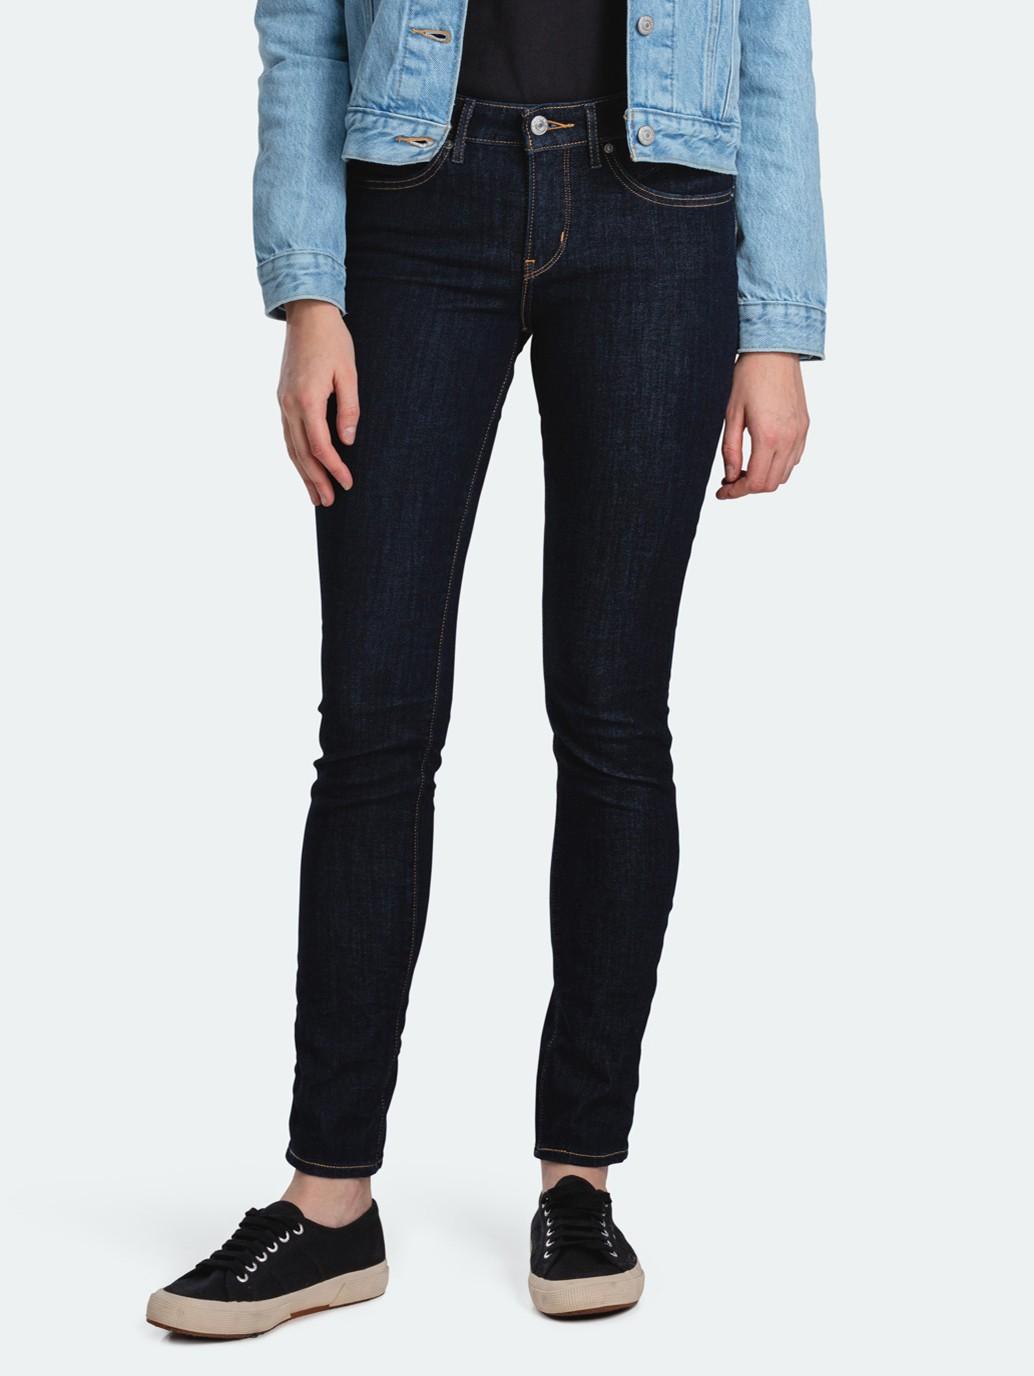 Buy Revel Shaping Skinny Jeans Levi S Official Online Store Sg